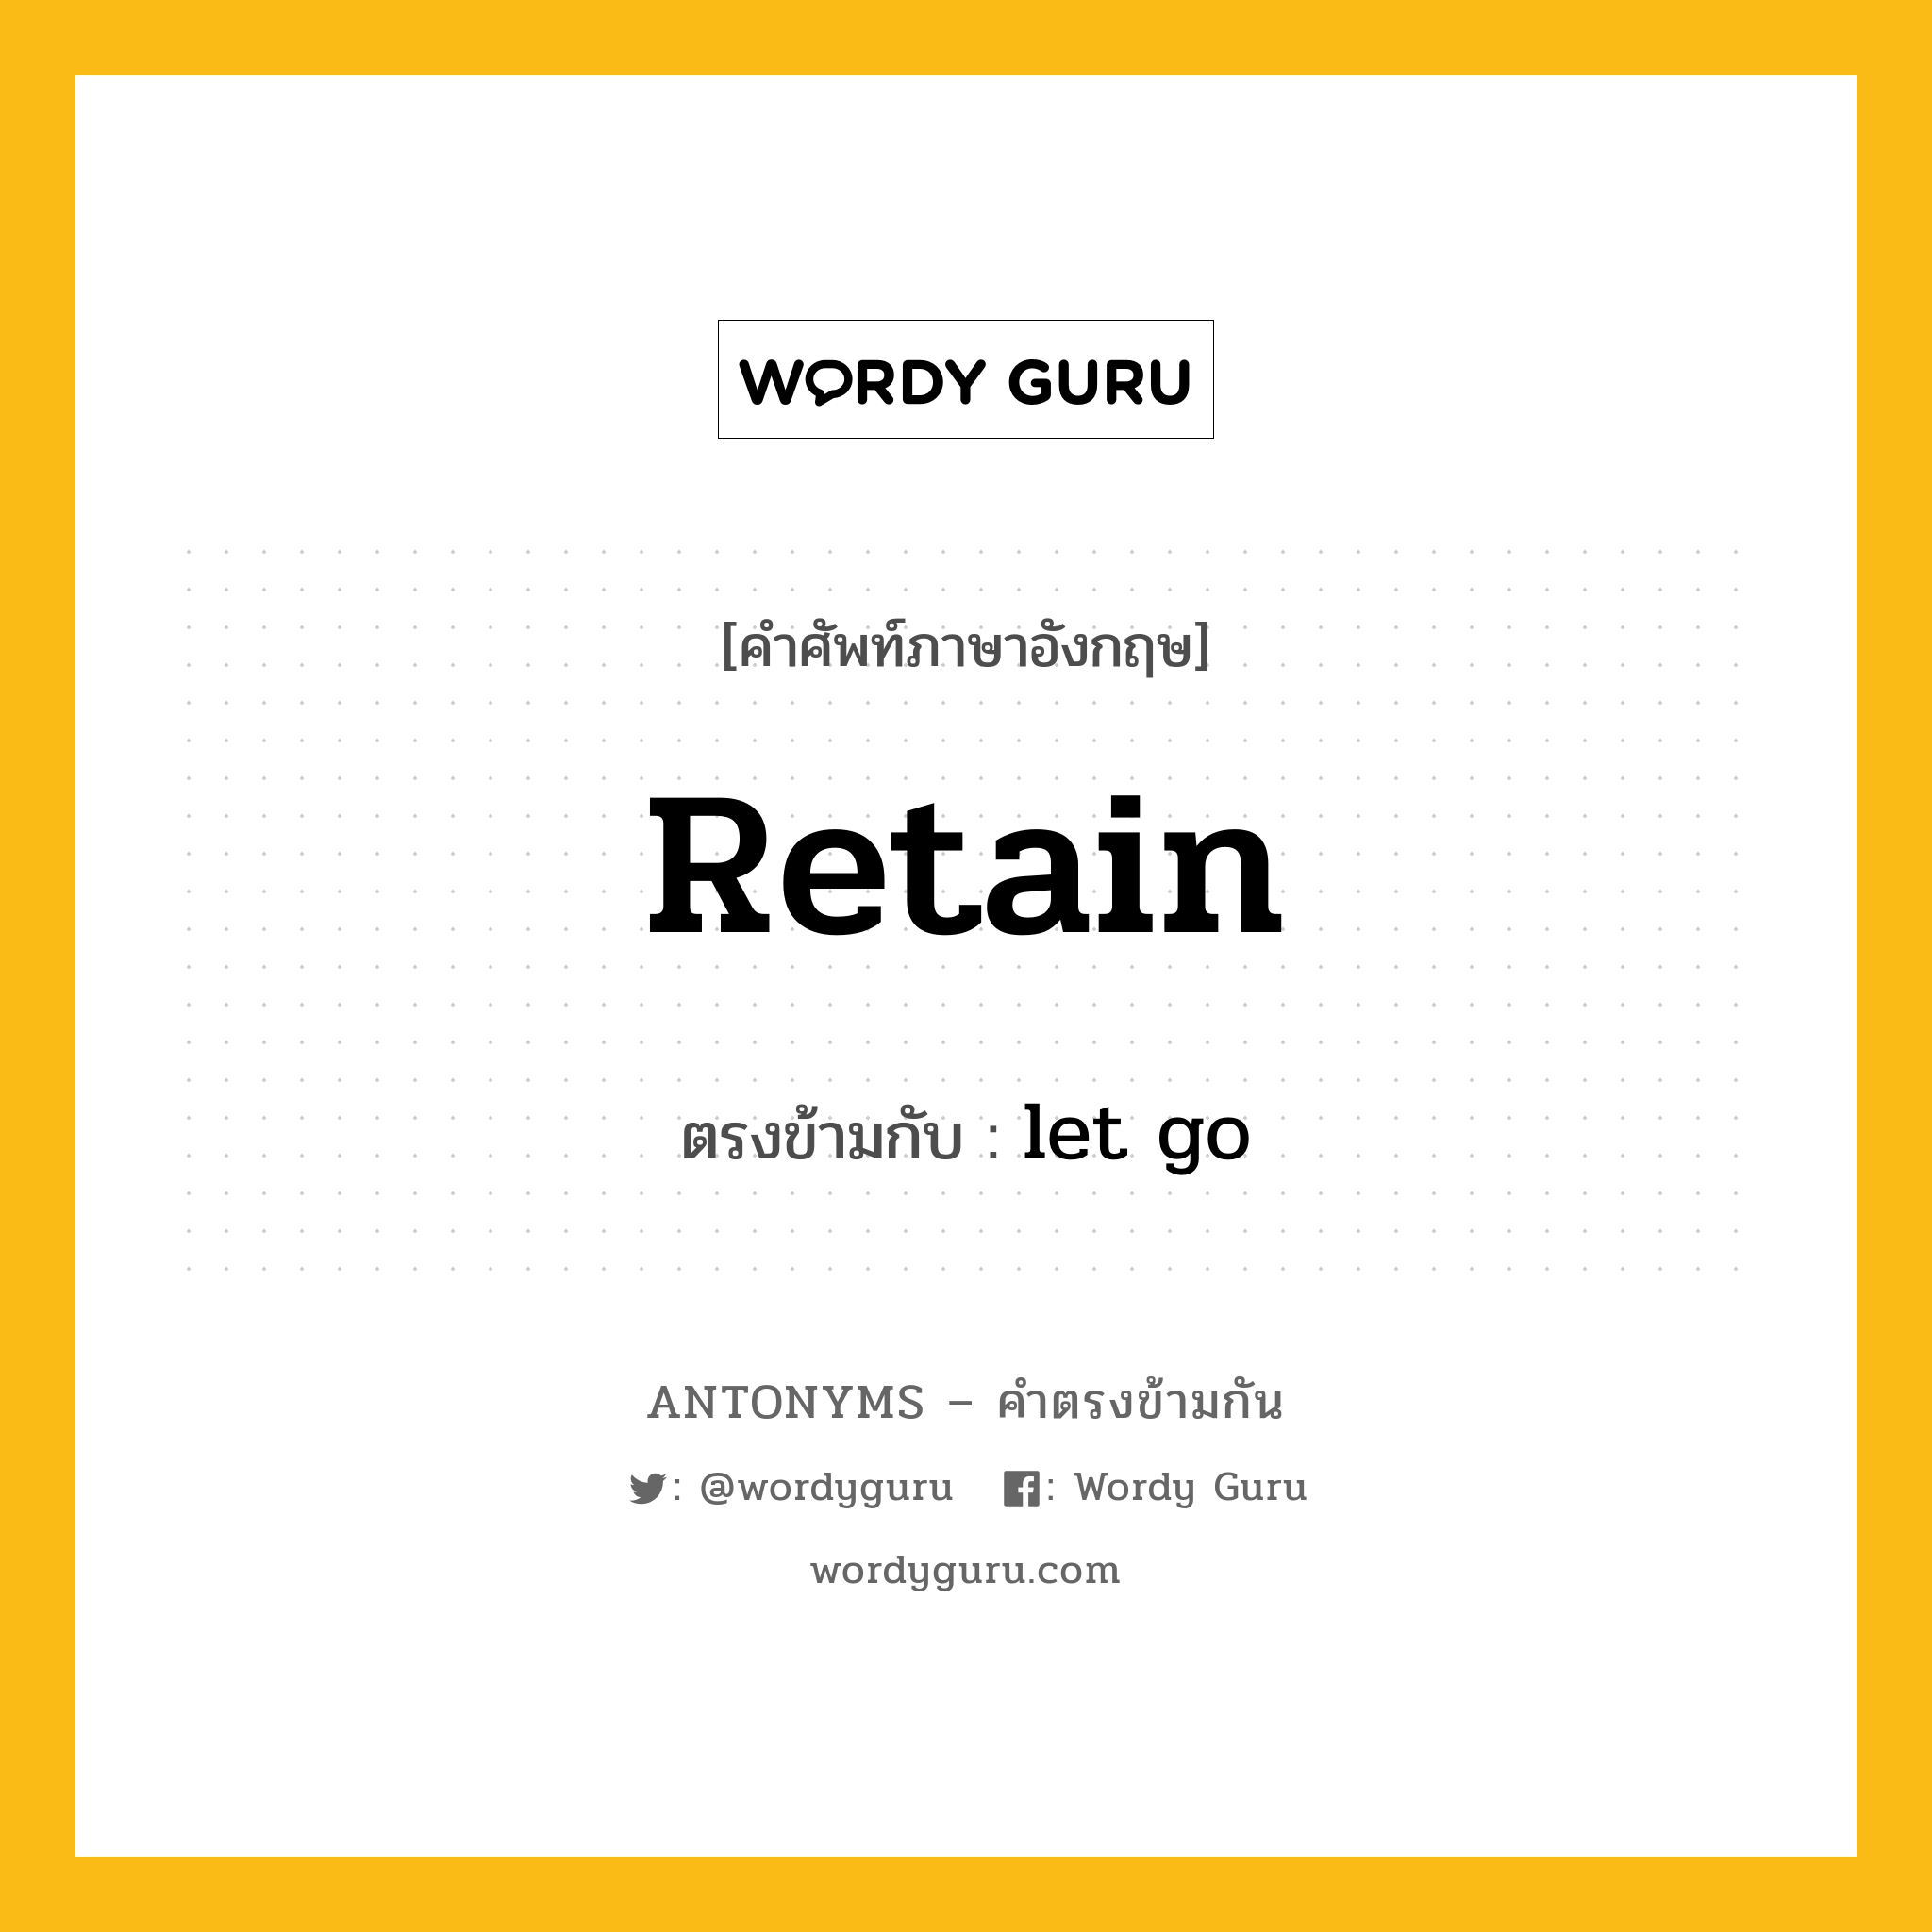 retain เป็นคำตรงข้ามกับคำไหนบ้าง?, คำศัพท์ภาษาอังกฤษ retain ตรงข้ามกับ let go หมวด let go